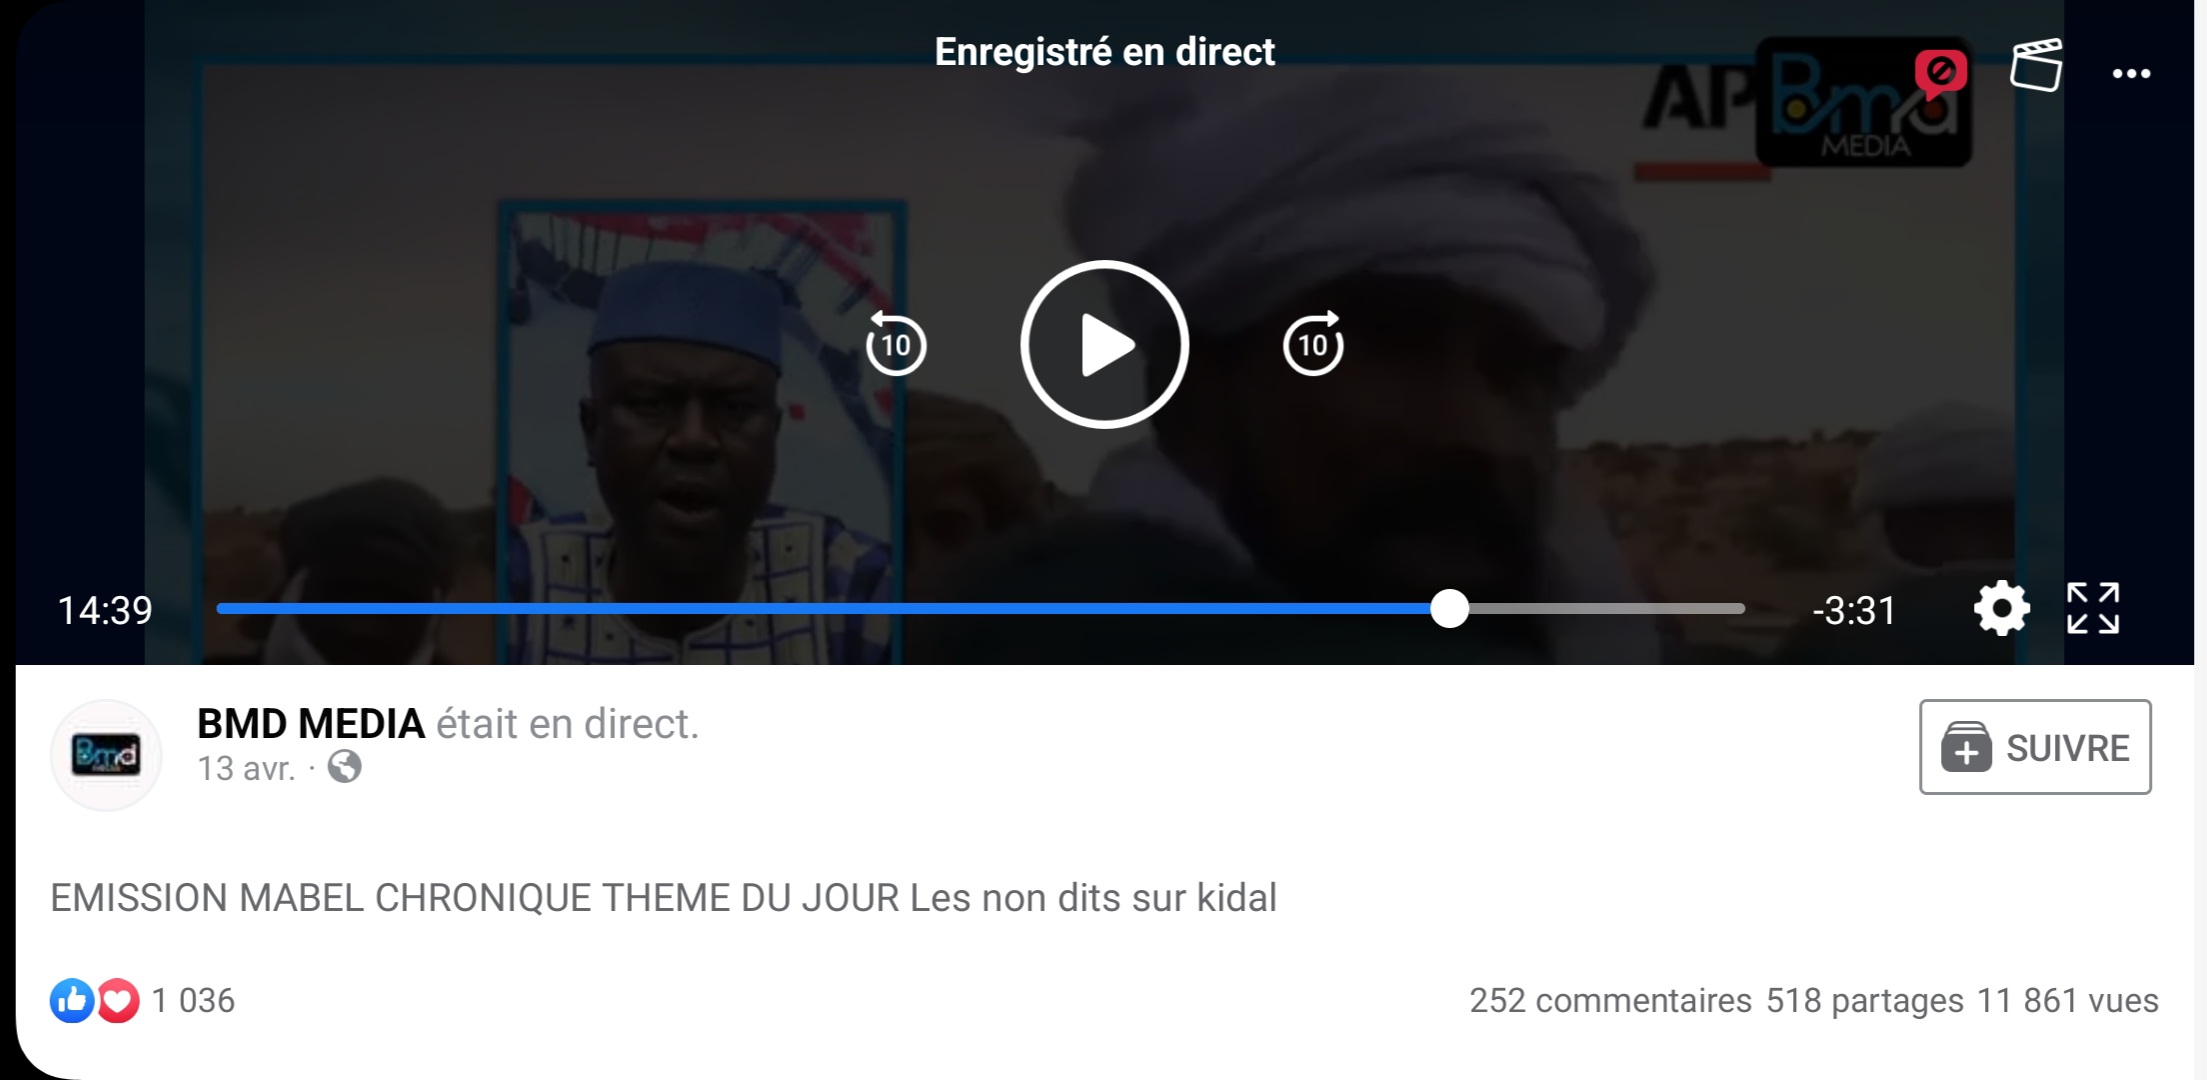 Mali : cette vidéo peut-elle être utilisée pour montrer “les non dits sur Kidal” ?